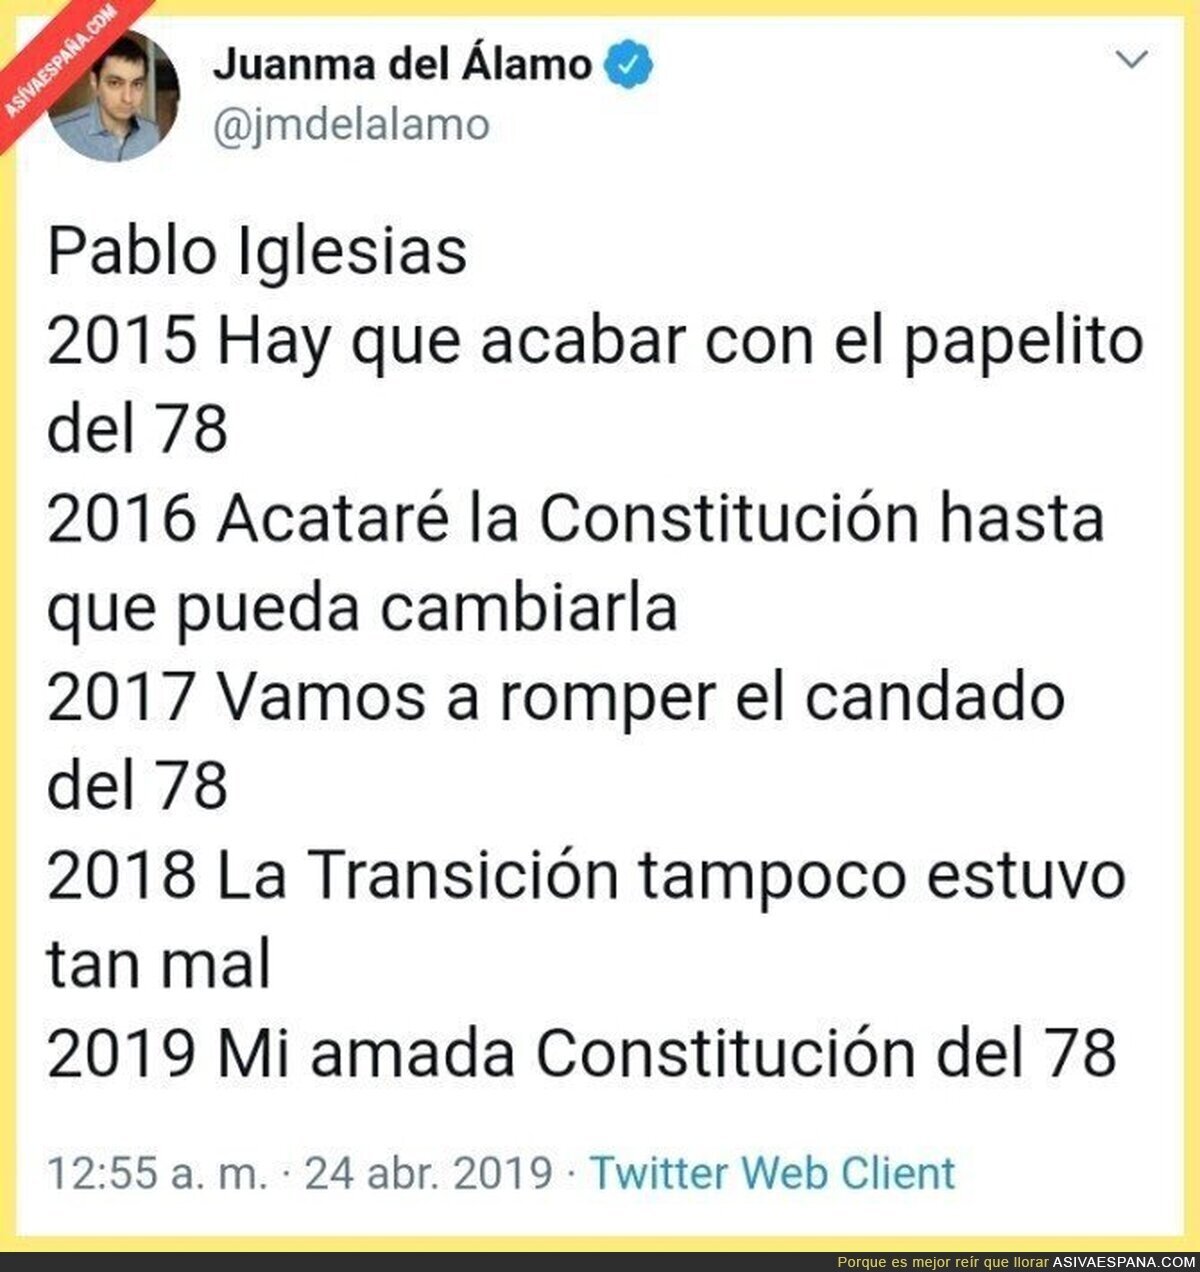 Cronología de la conversión constitucional de Pablo Iglesias